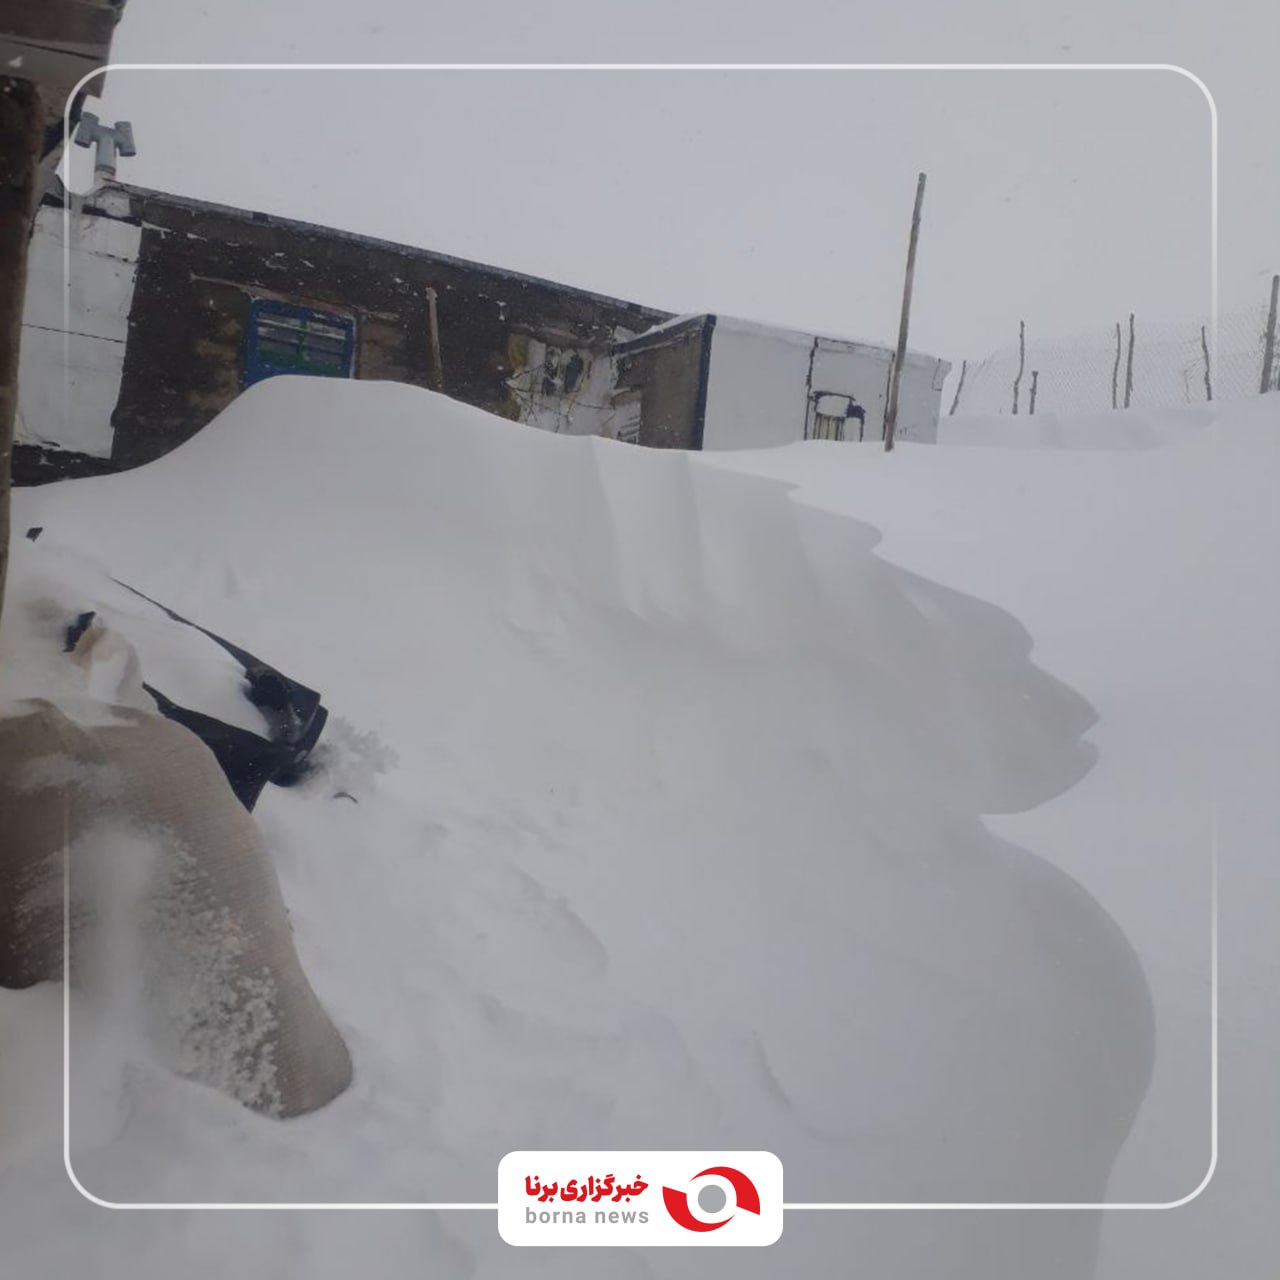 تصویر زیبای کولاک برف در ورودی یکی از خانه‌های روستایی سقز + عکس